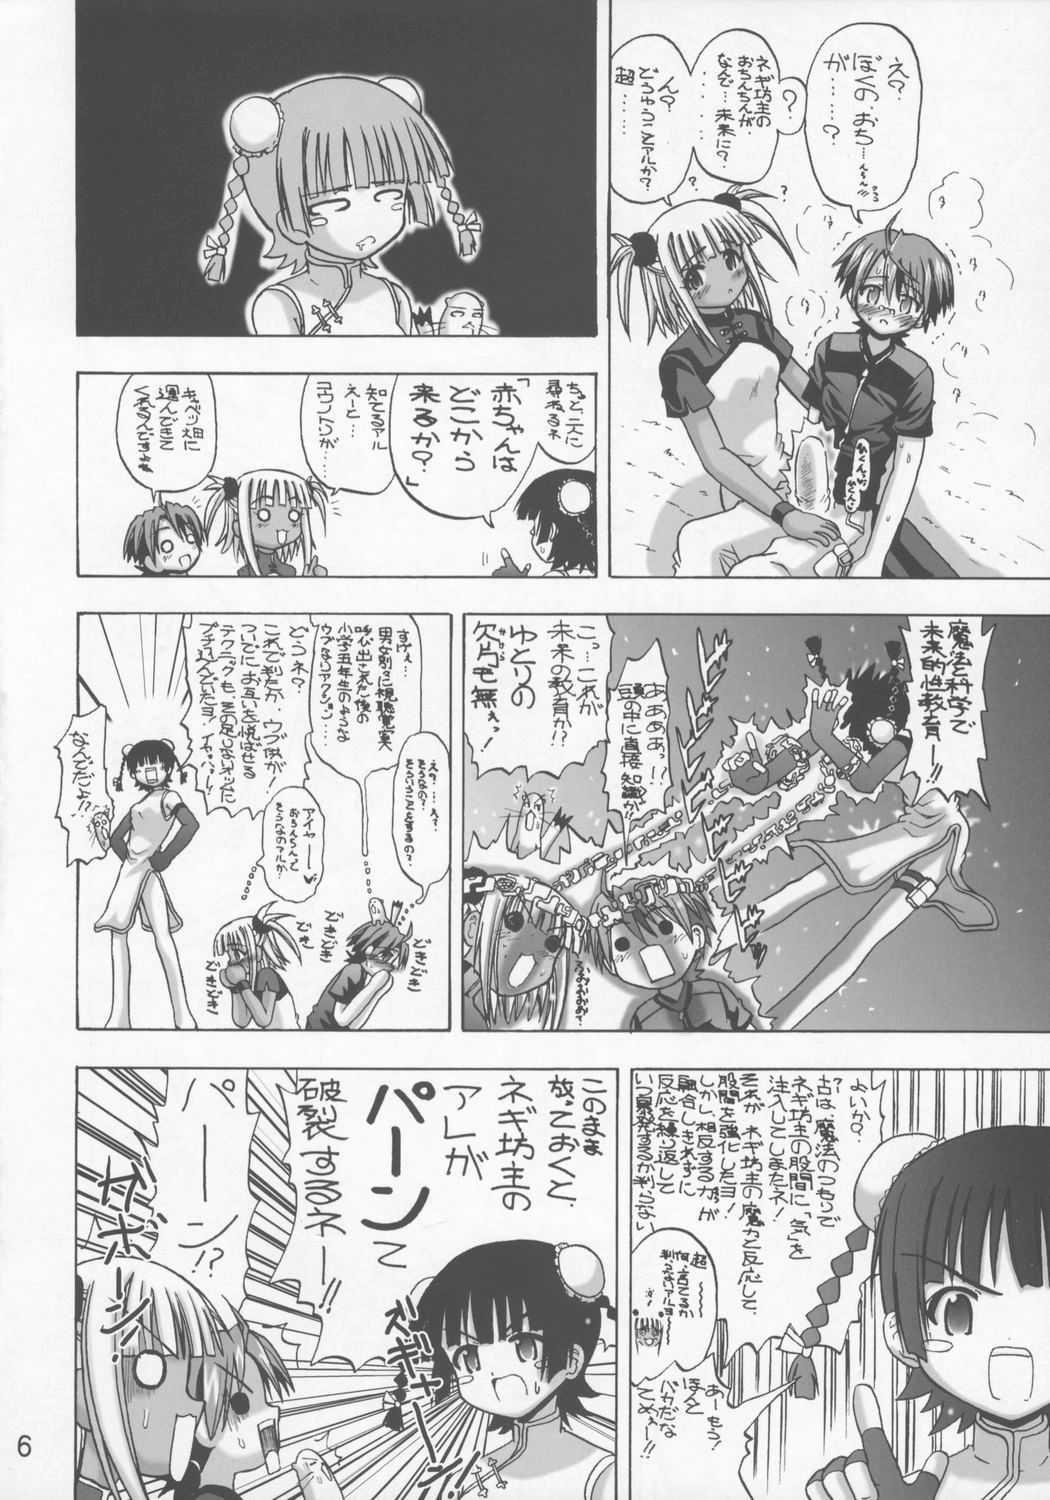 Spanking Ku Negi - Mahou sensei negima Chat - Page 5